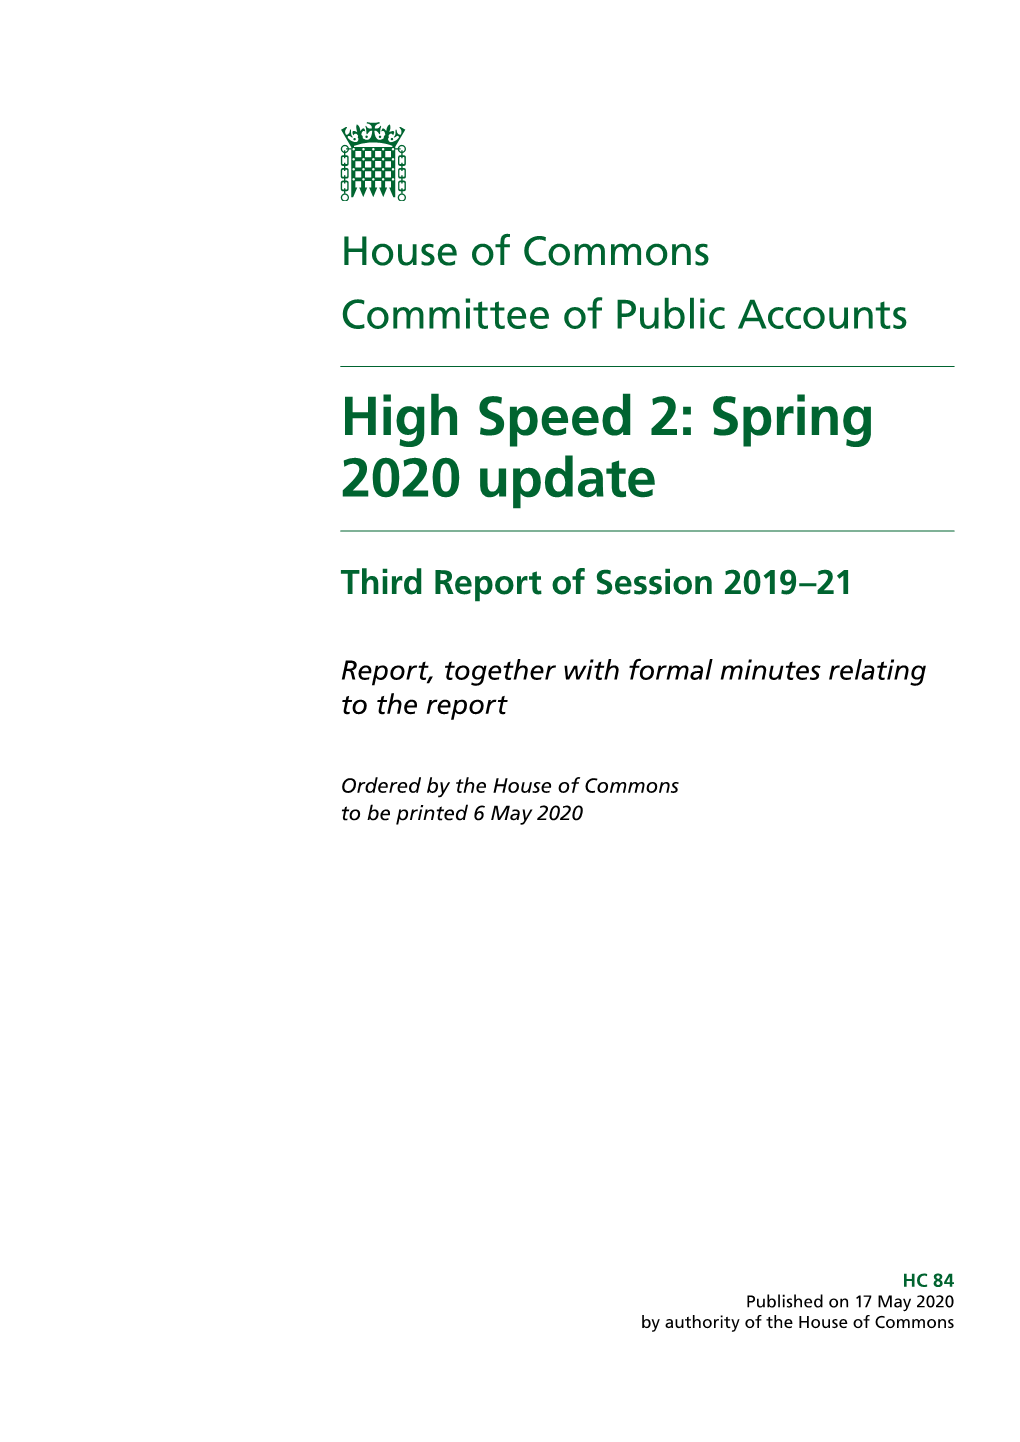 High Speed 2: Spring 2020 Update